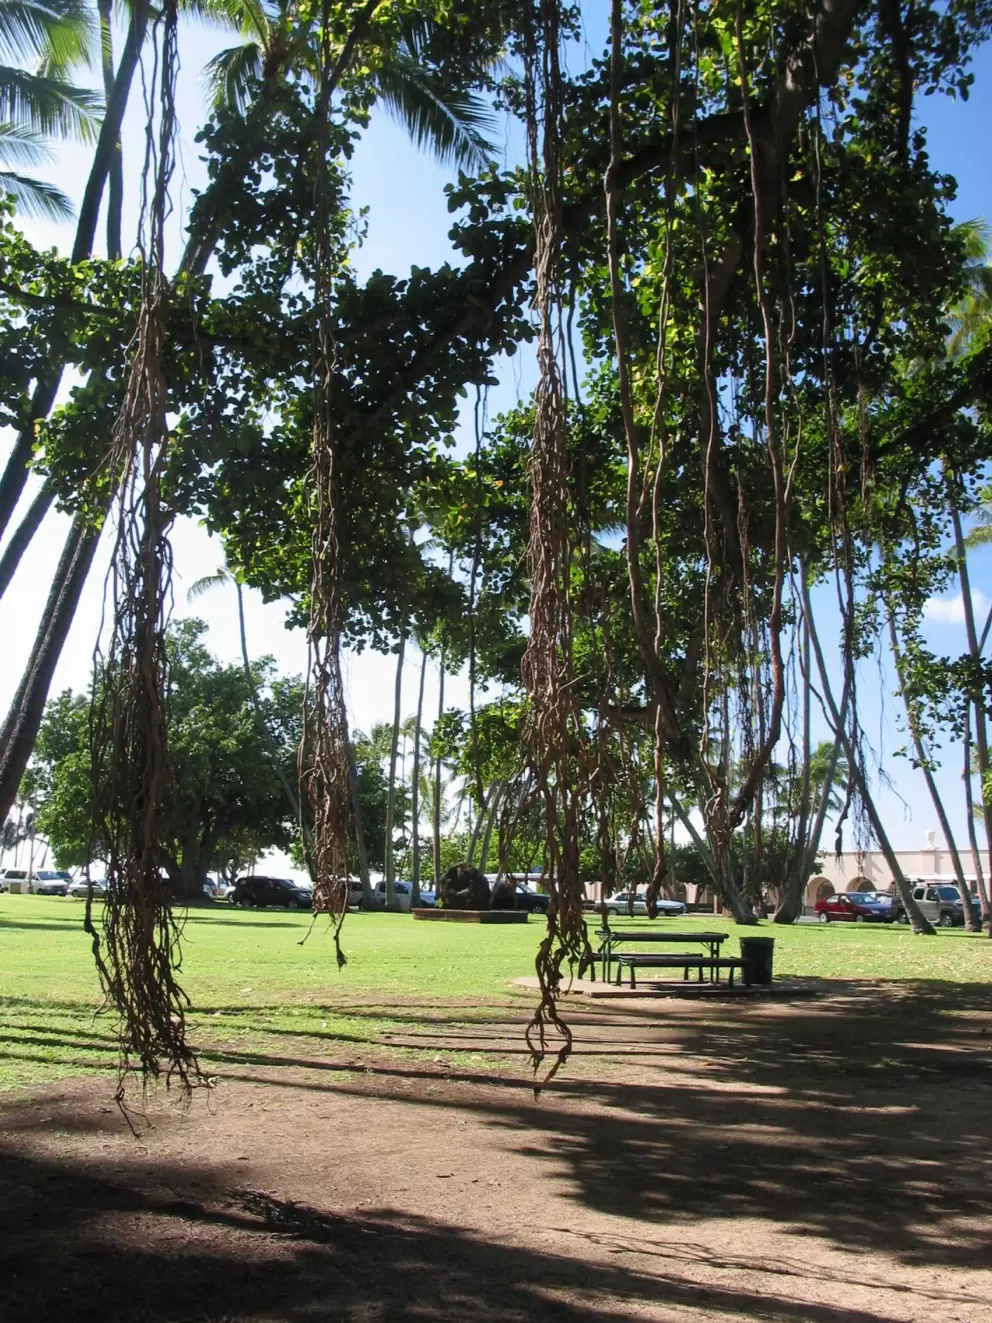 Hau Tree Beach, Waikiki